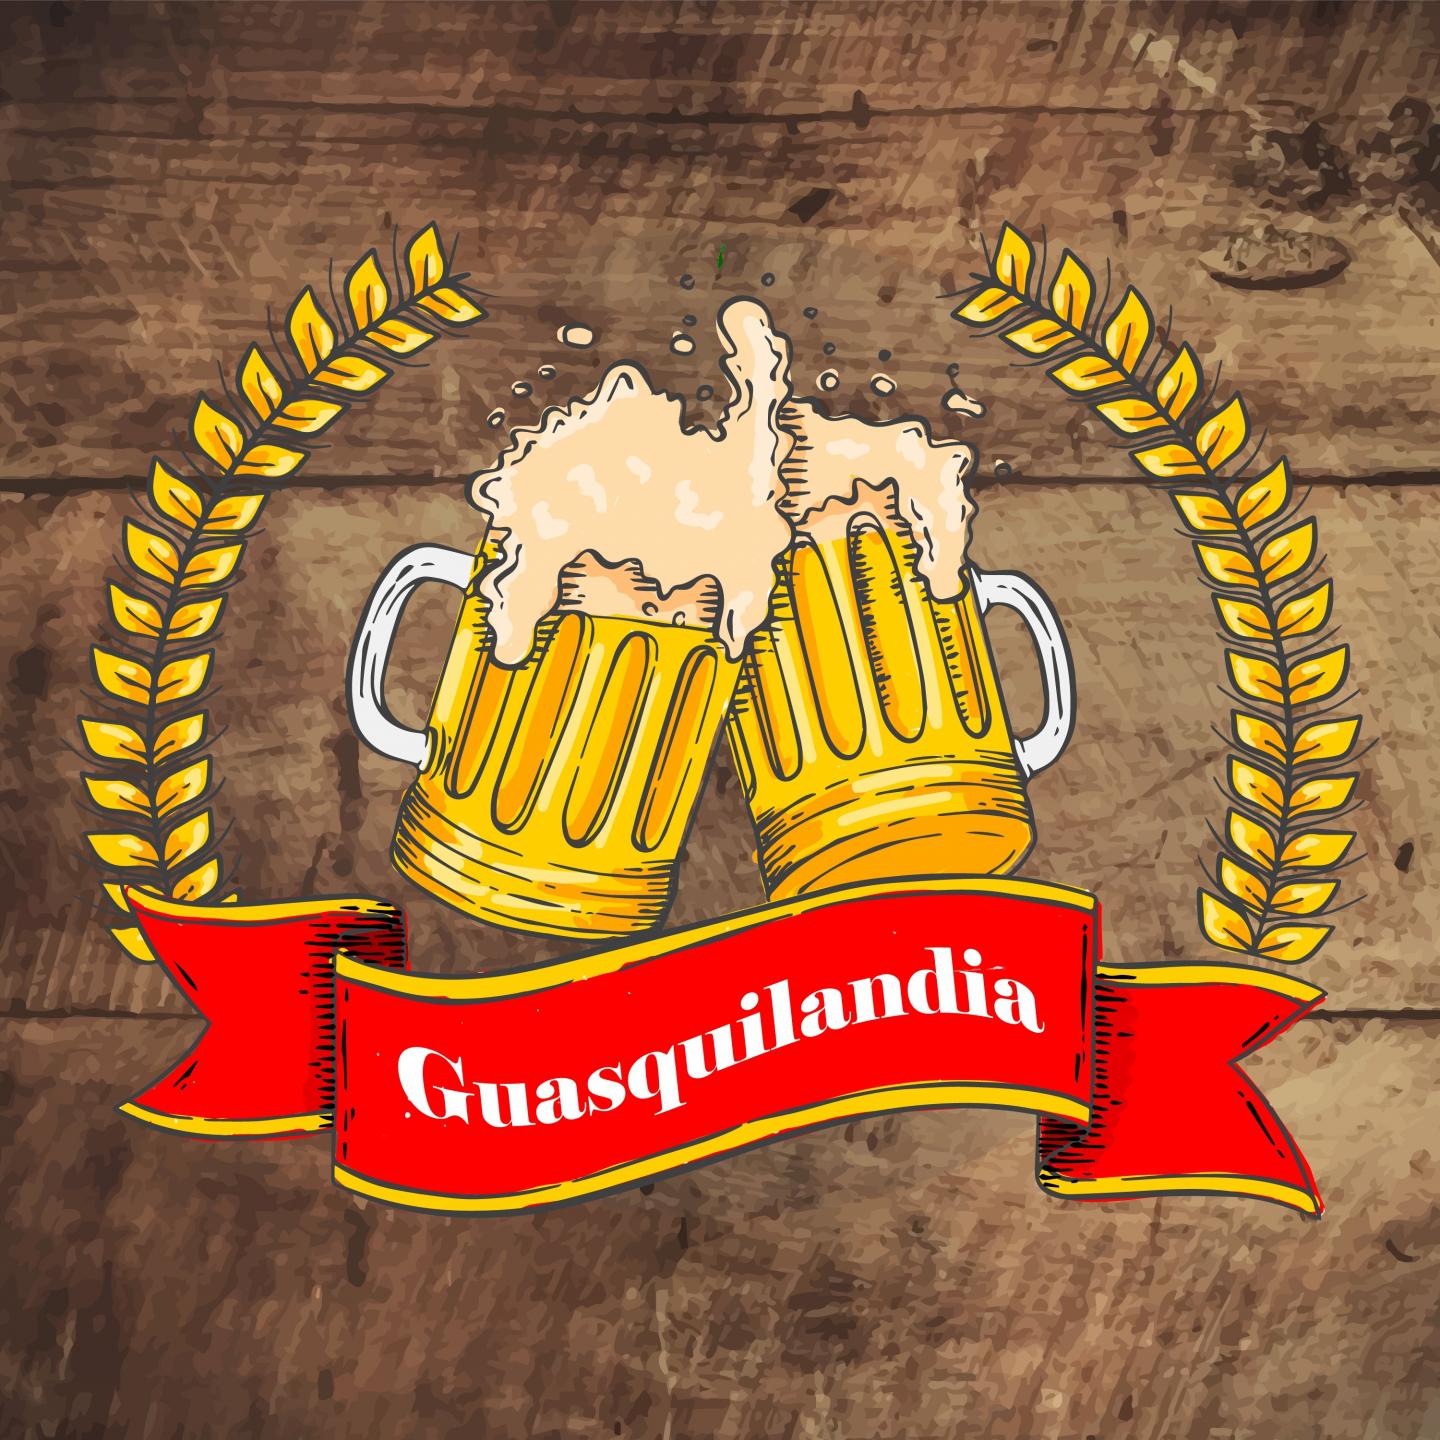 Guasquilandia